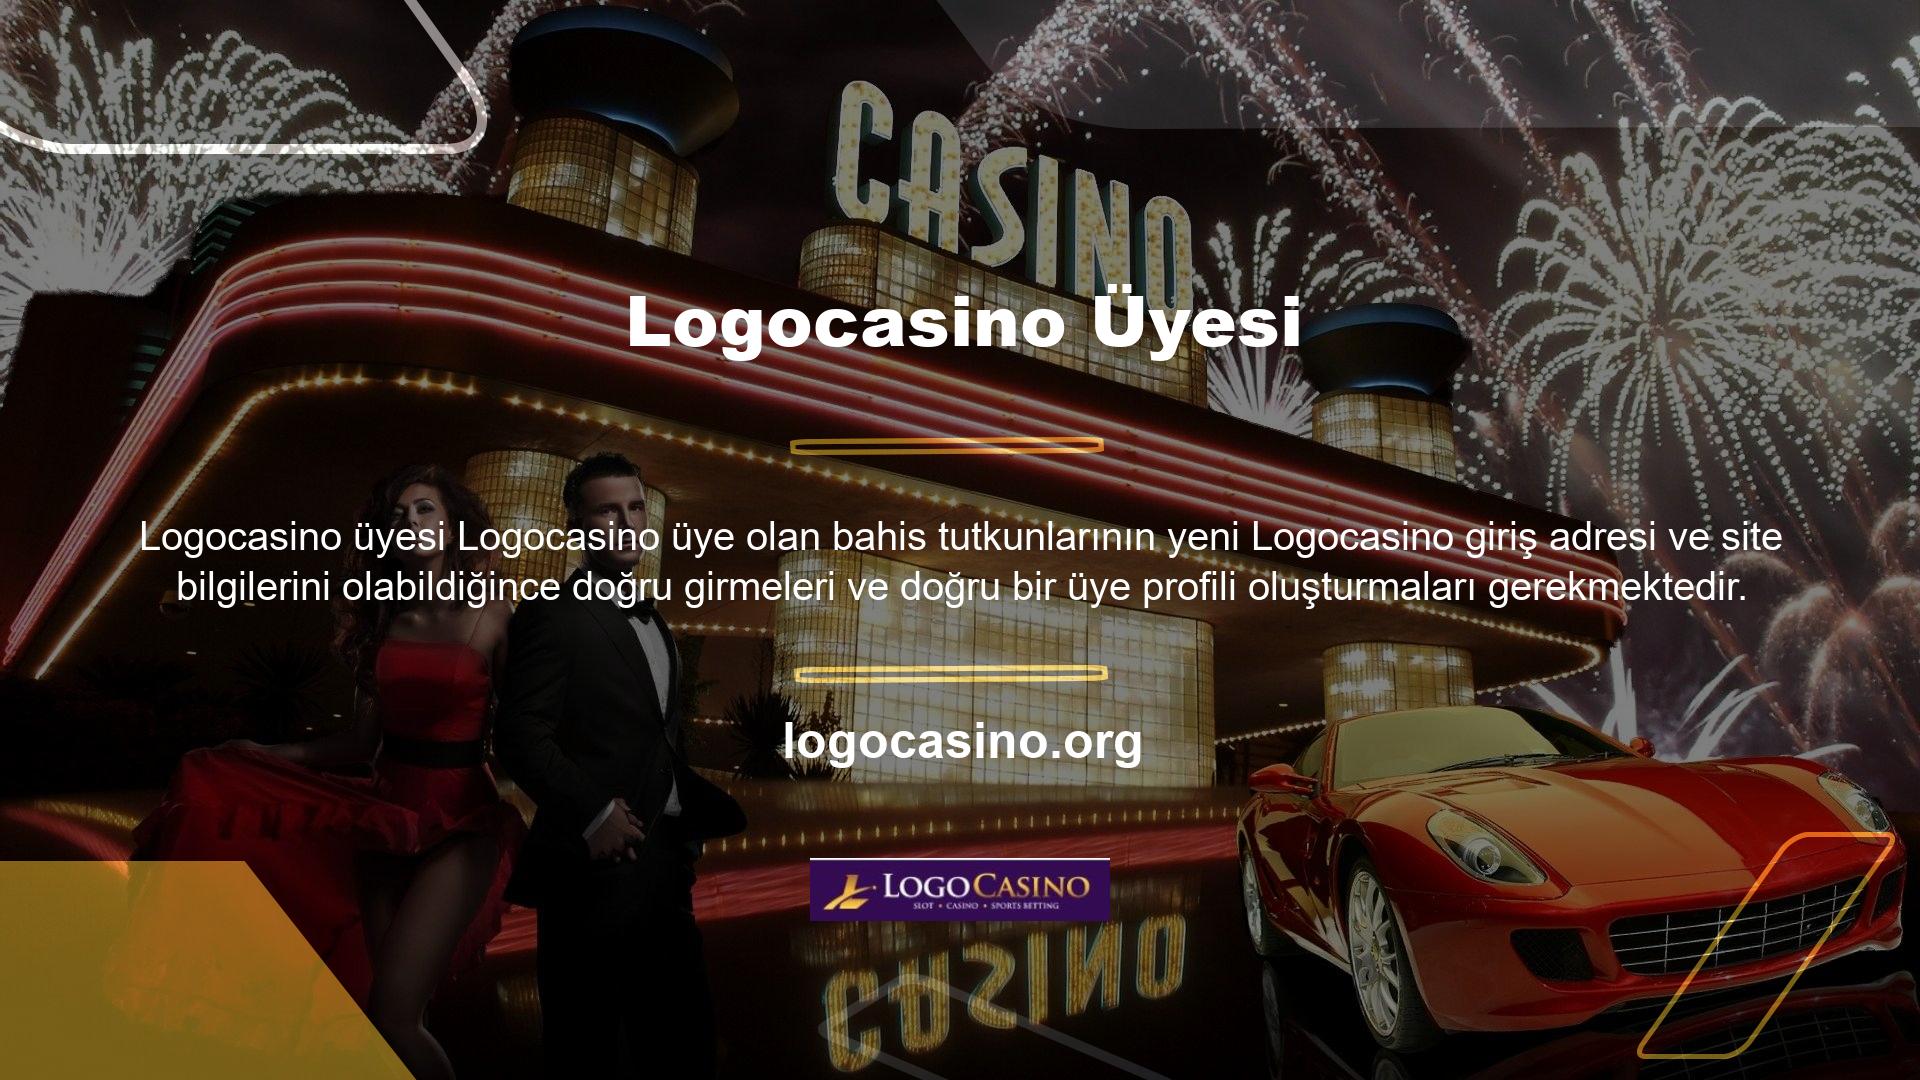 Para yatırmak isteyen Logocasino üyeleri Logocasino üye hesabı şeklinde gerçek bir banka hesabı açmalıdır